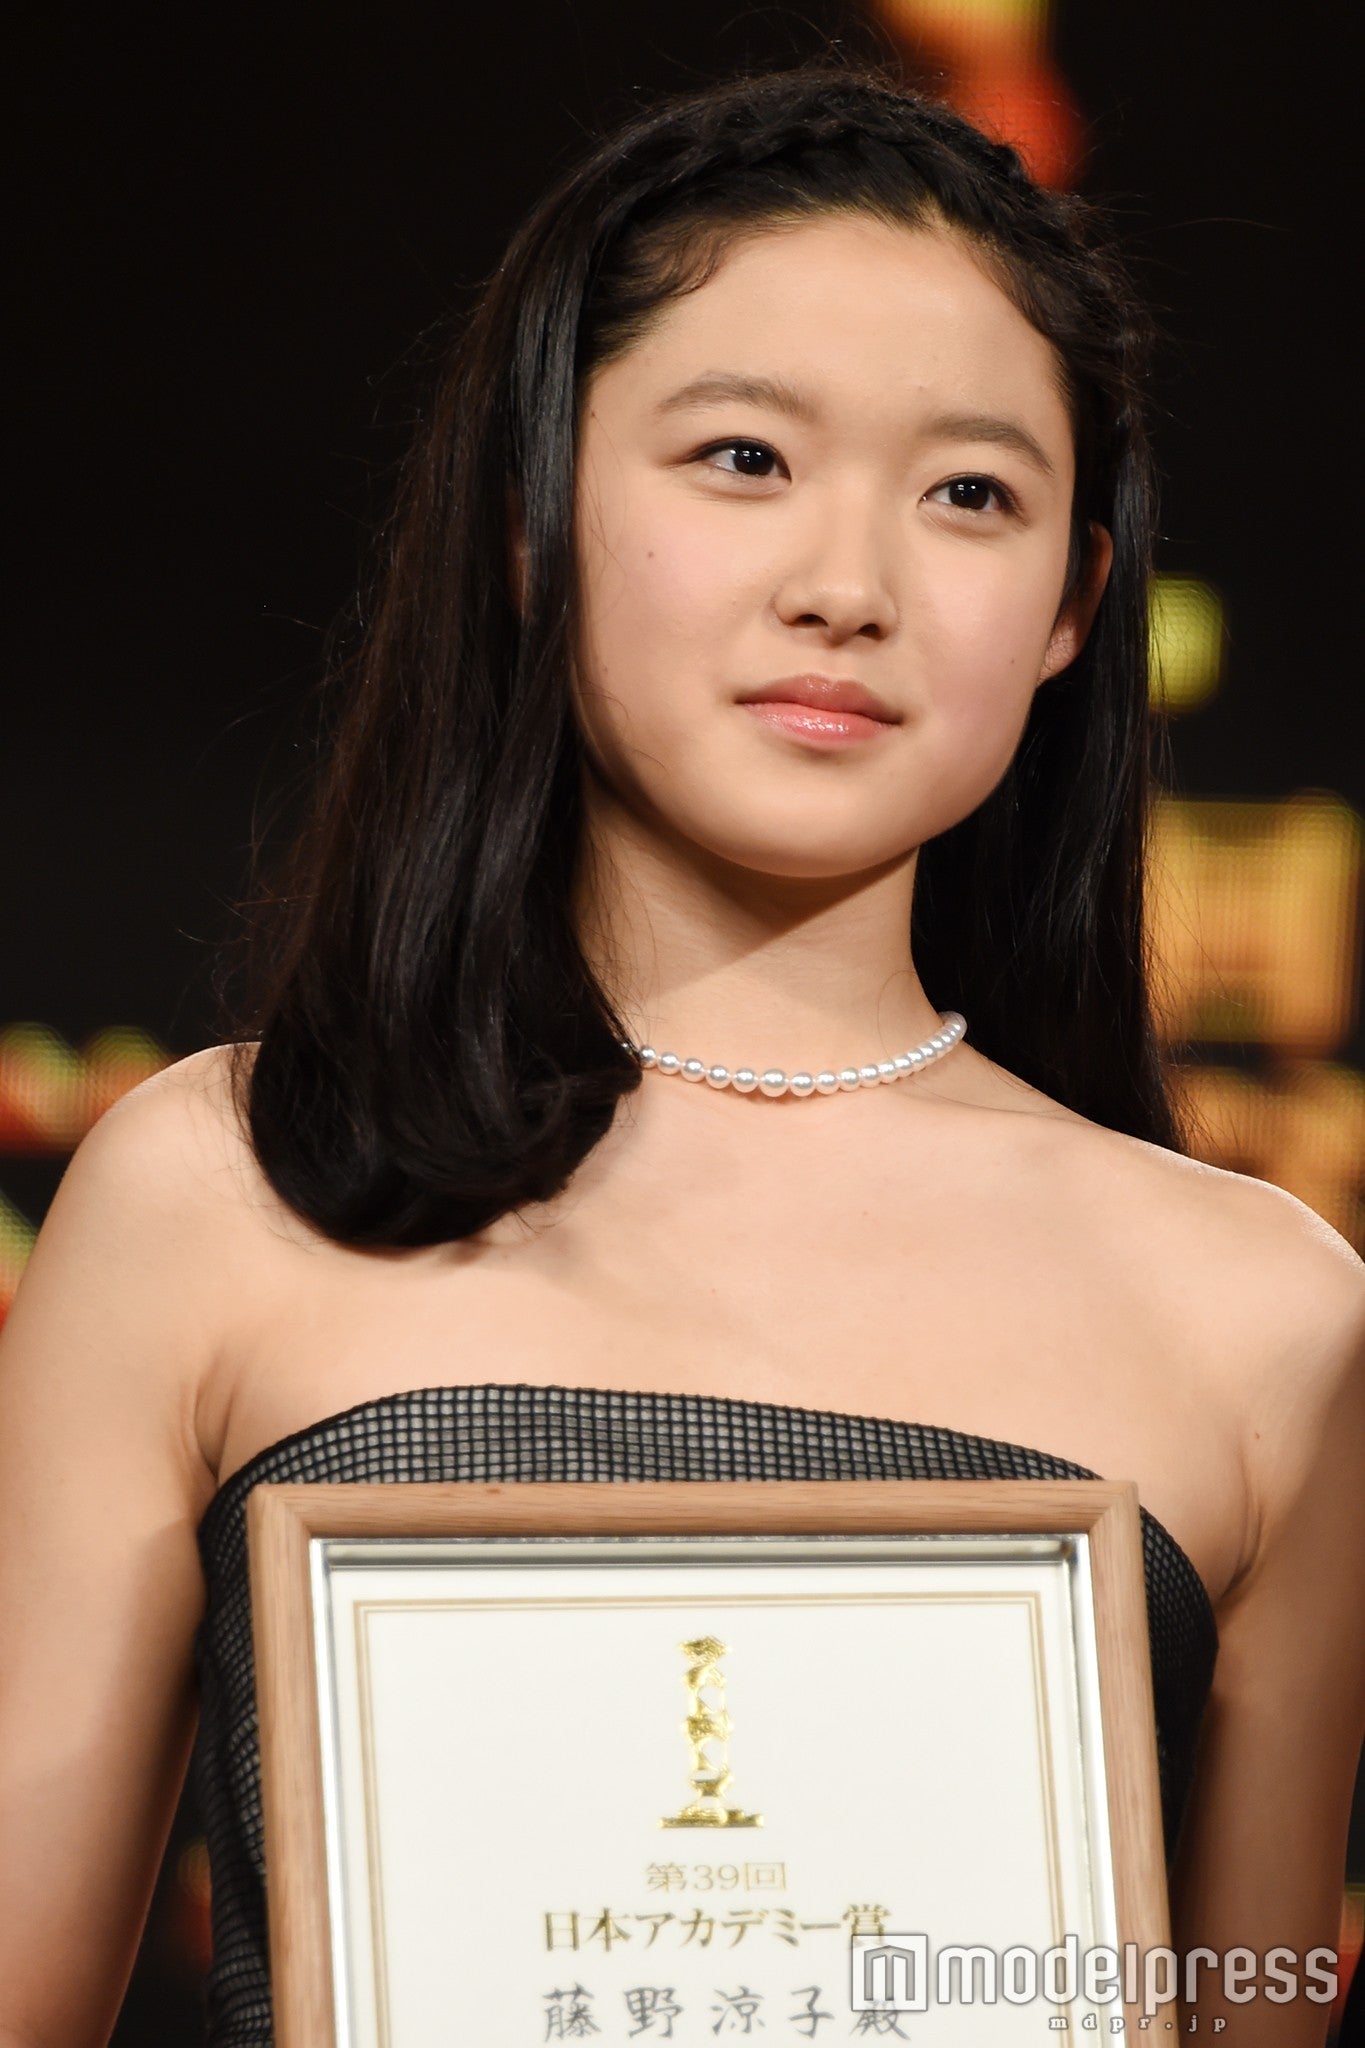 日本アカデミー賞 で涙のスピーチ 映画の申し子 藤野涼子が大物の予感 モデルプレス